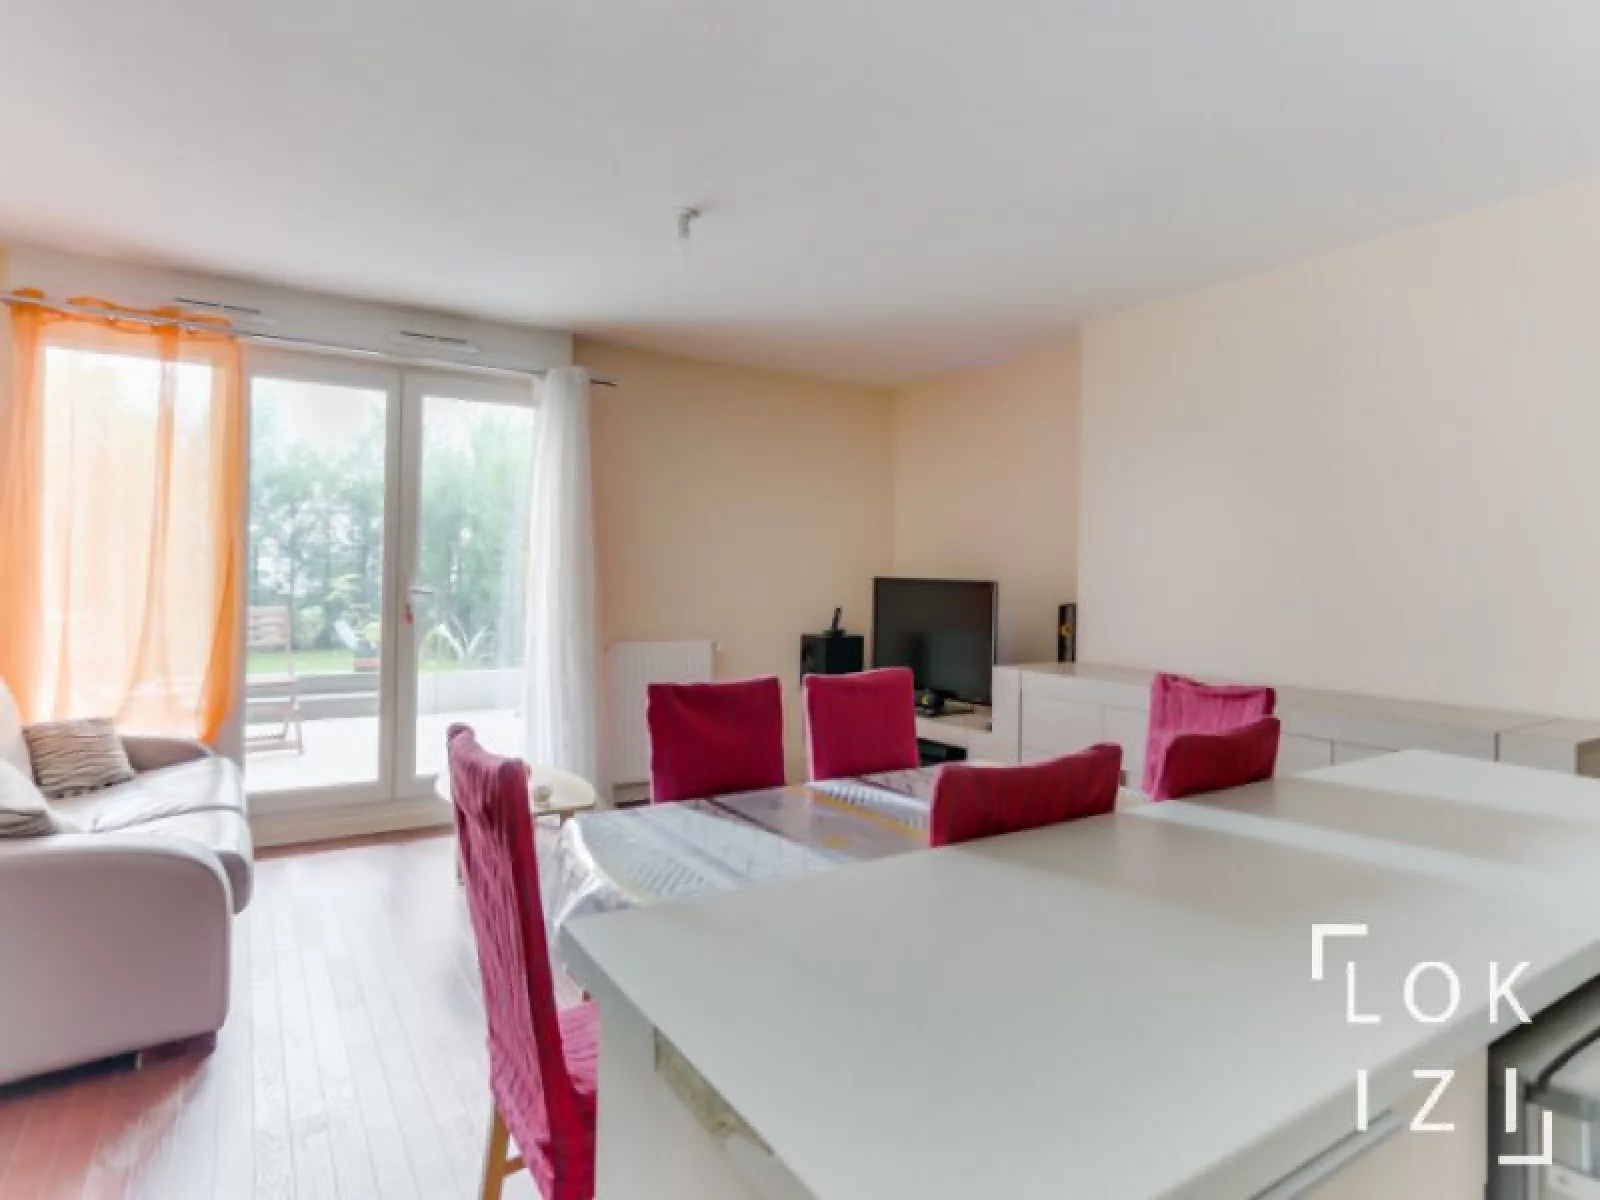 Location appartement meublé 3 pièces 64m² avec terrasse (Paris - Rosny s/ Bois 93)